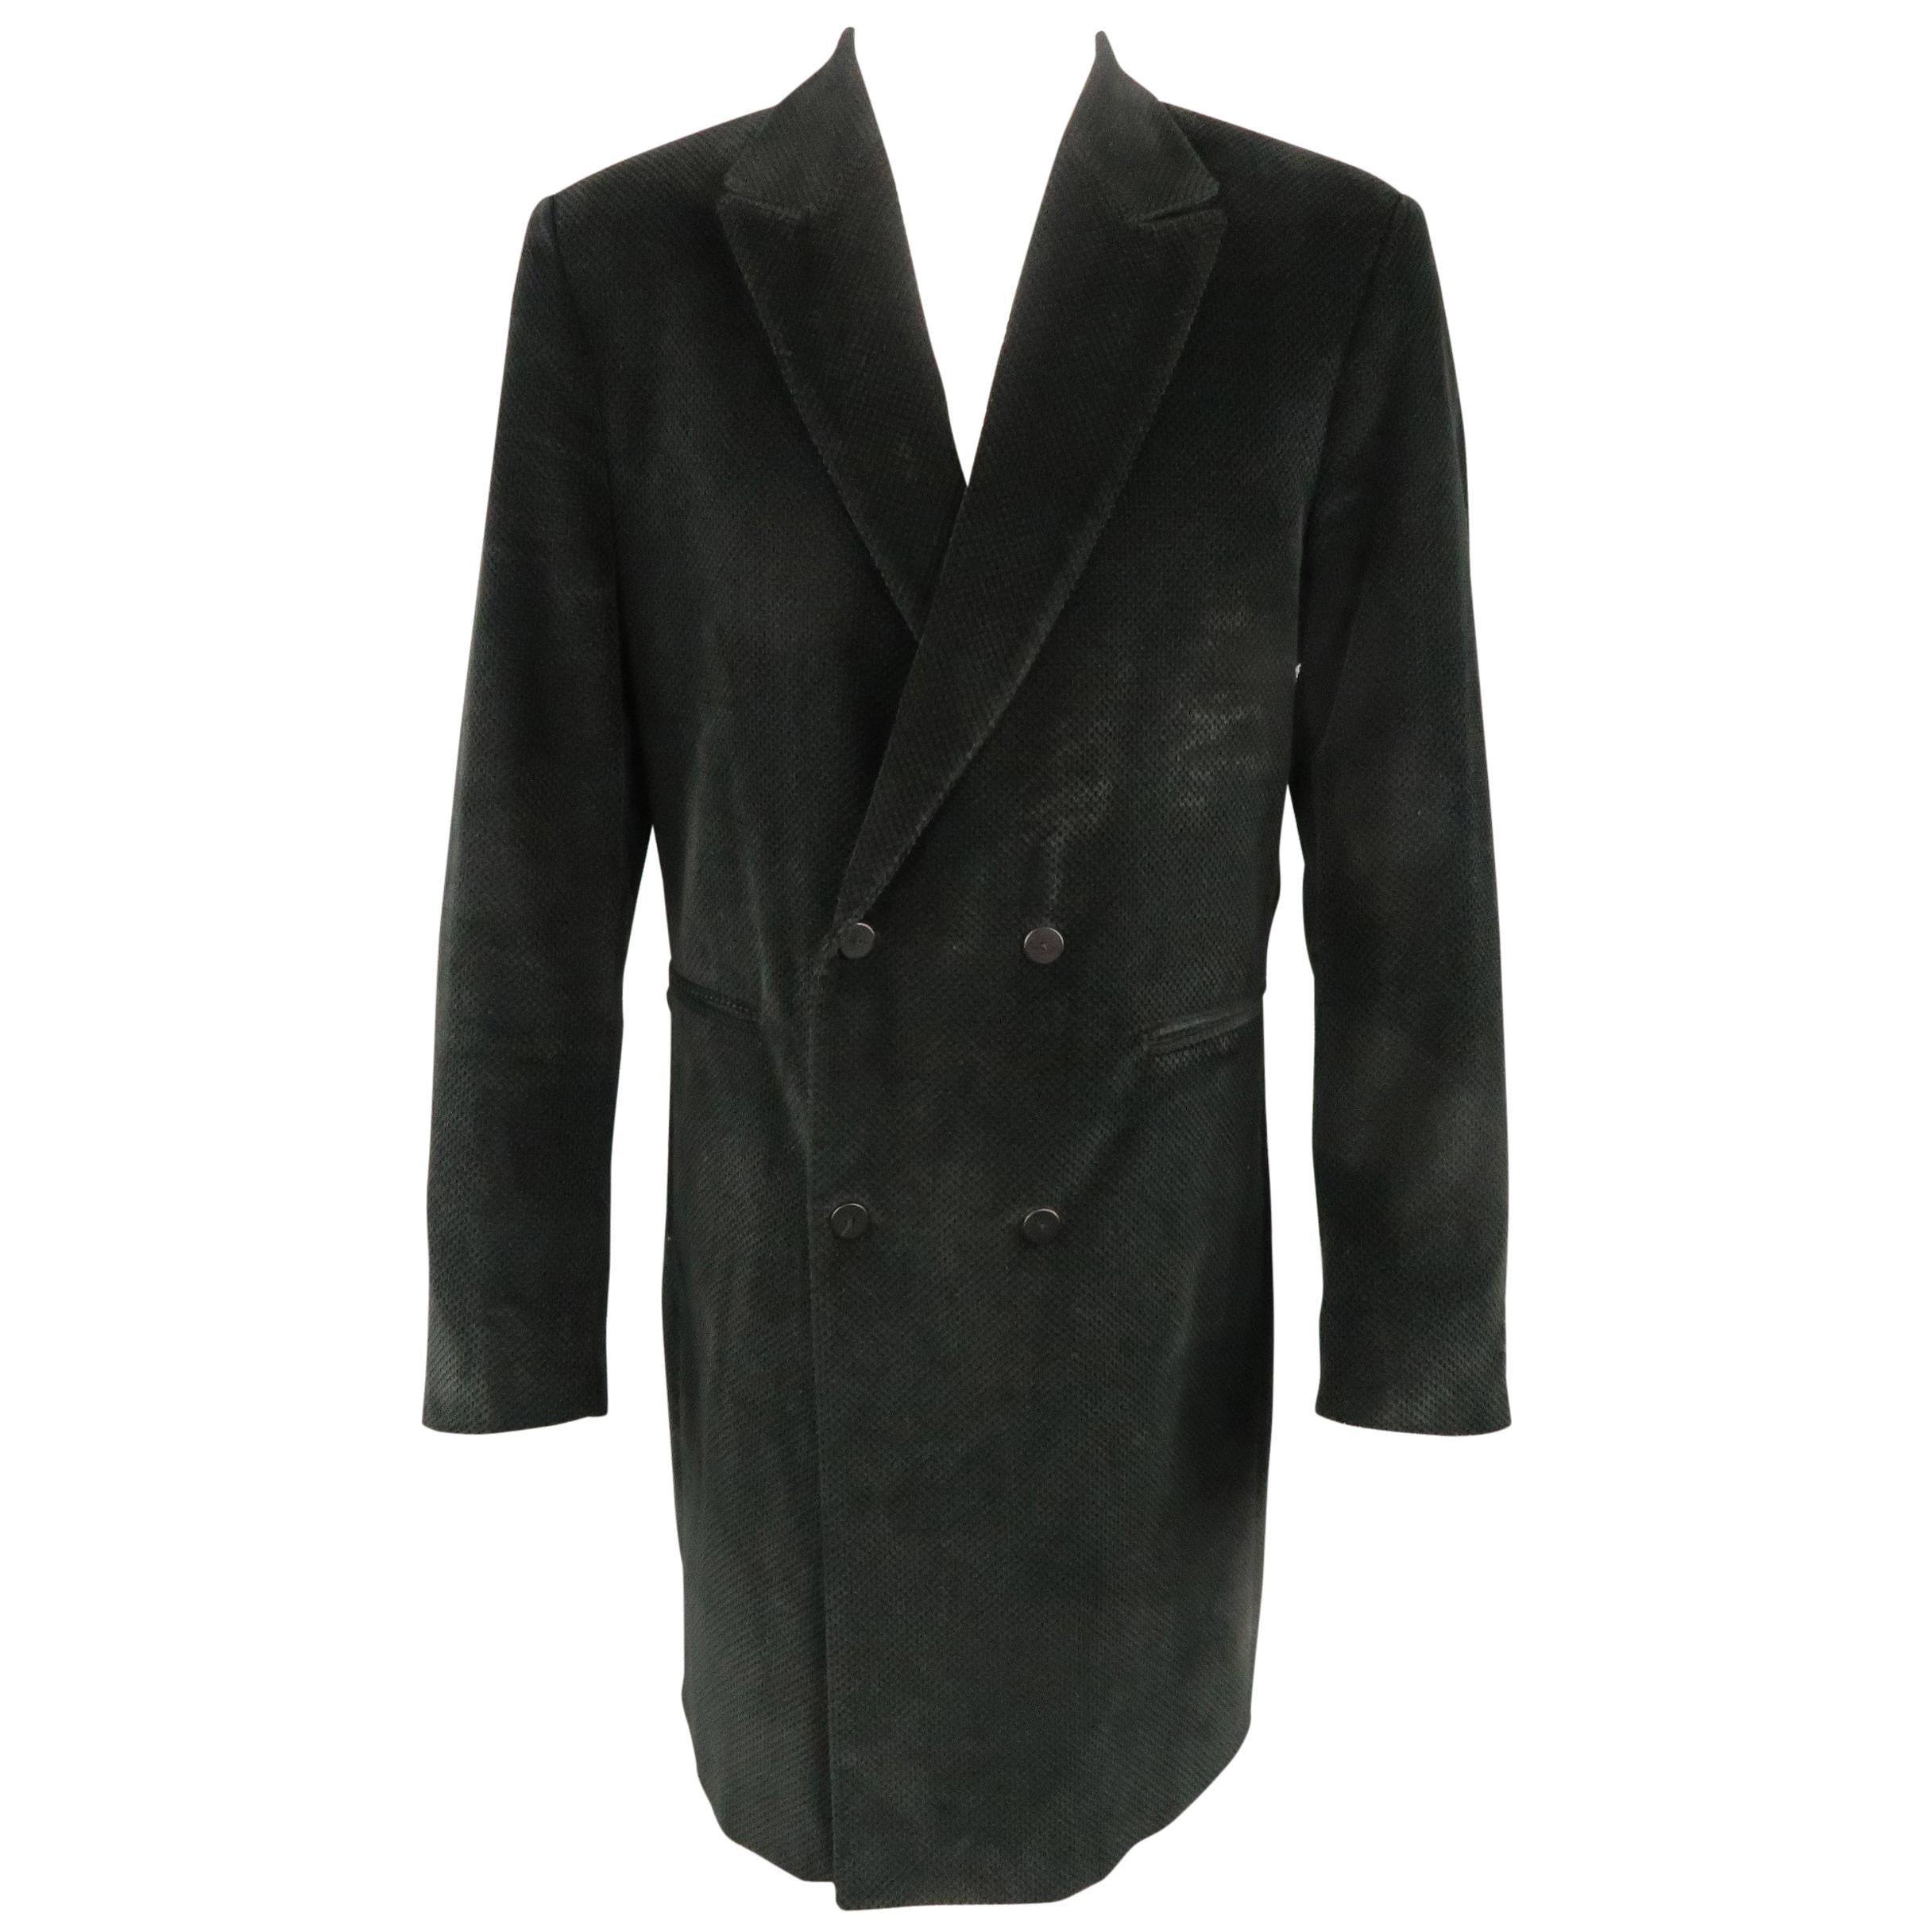 DOMINIQUE MORLOTTI 40 Black Nailhead Textured Velvet Peak Lapel Coat